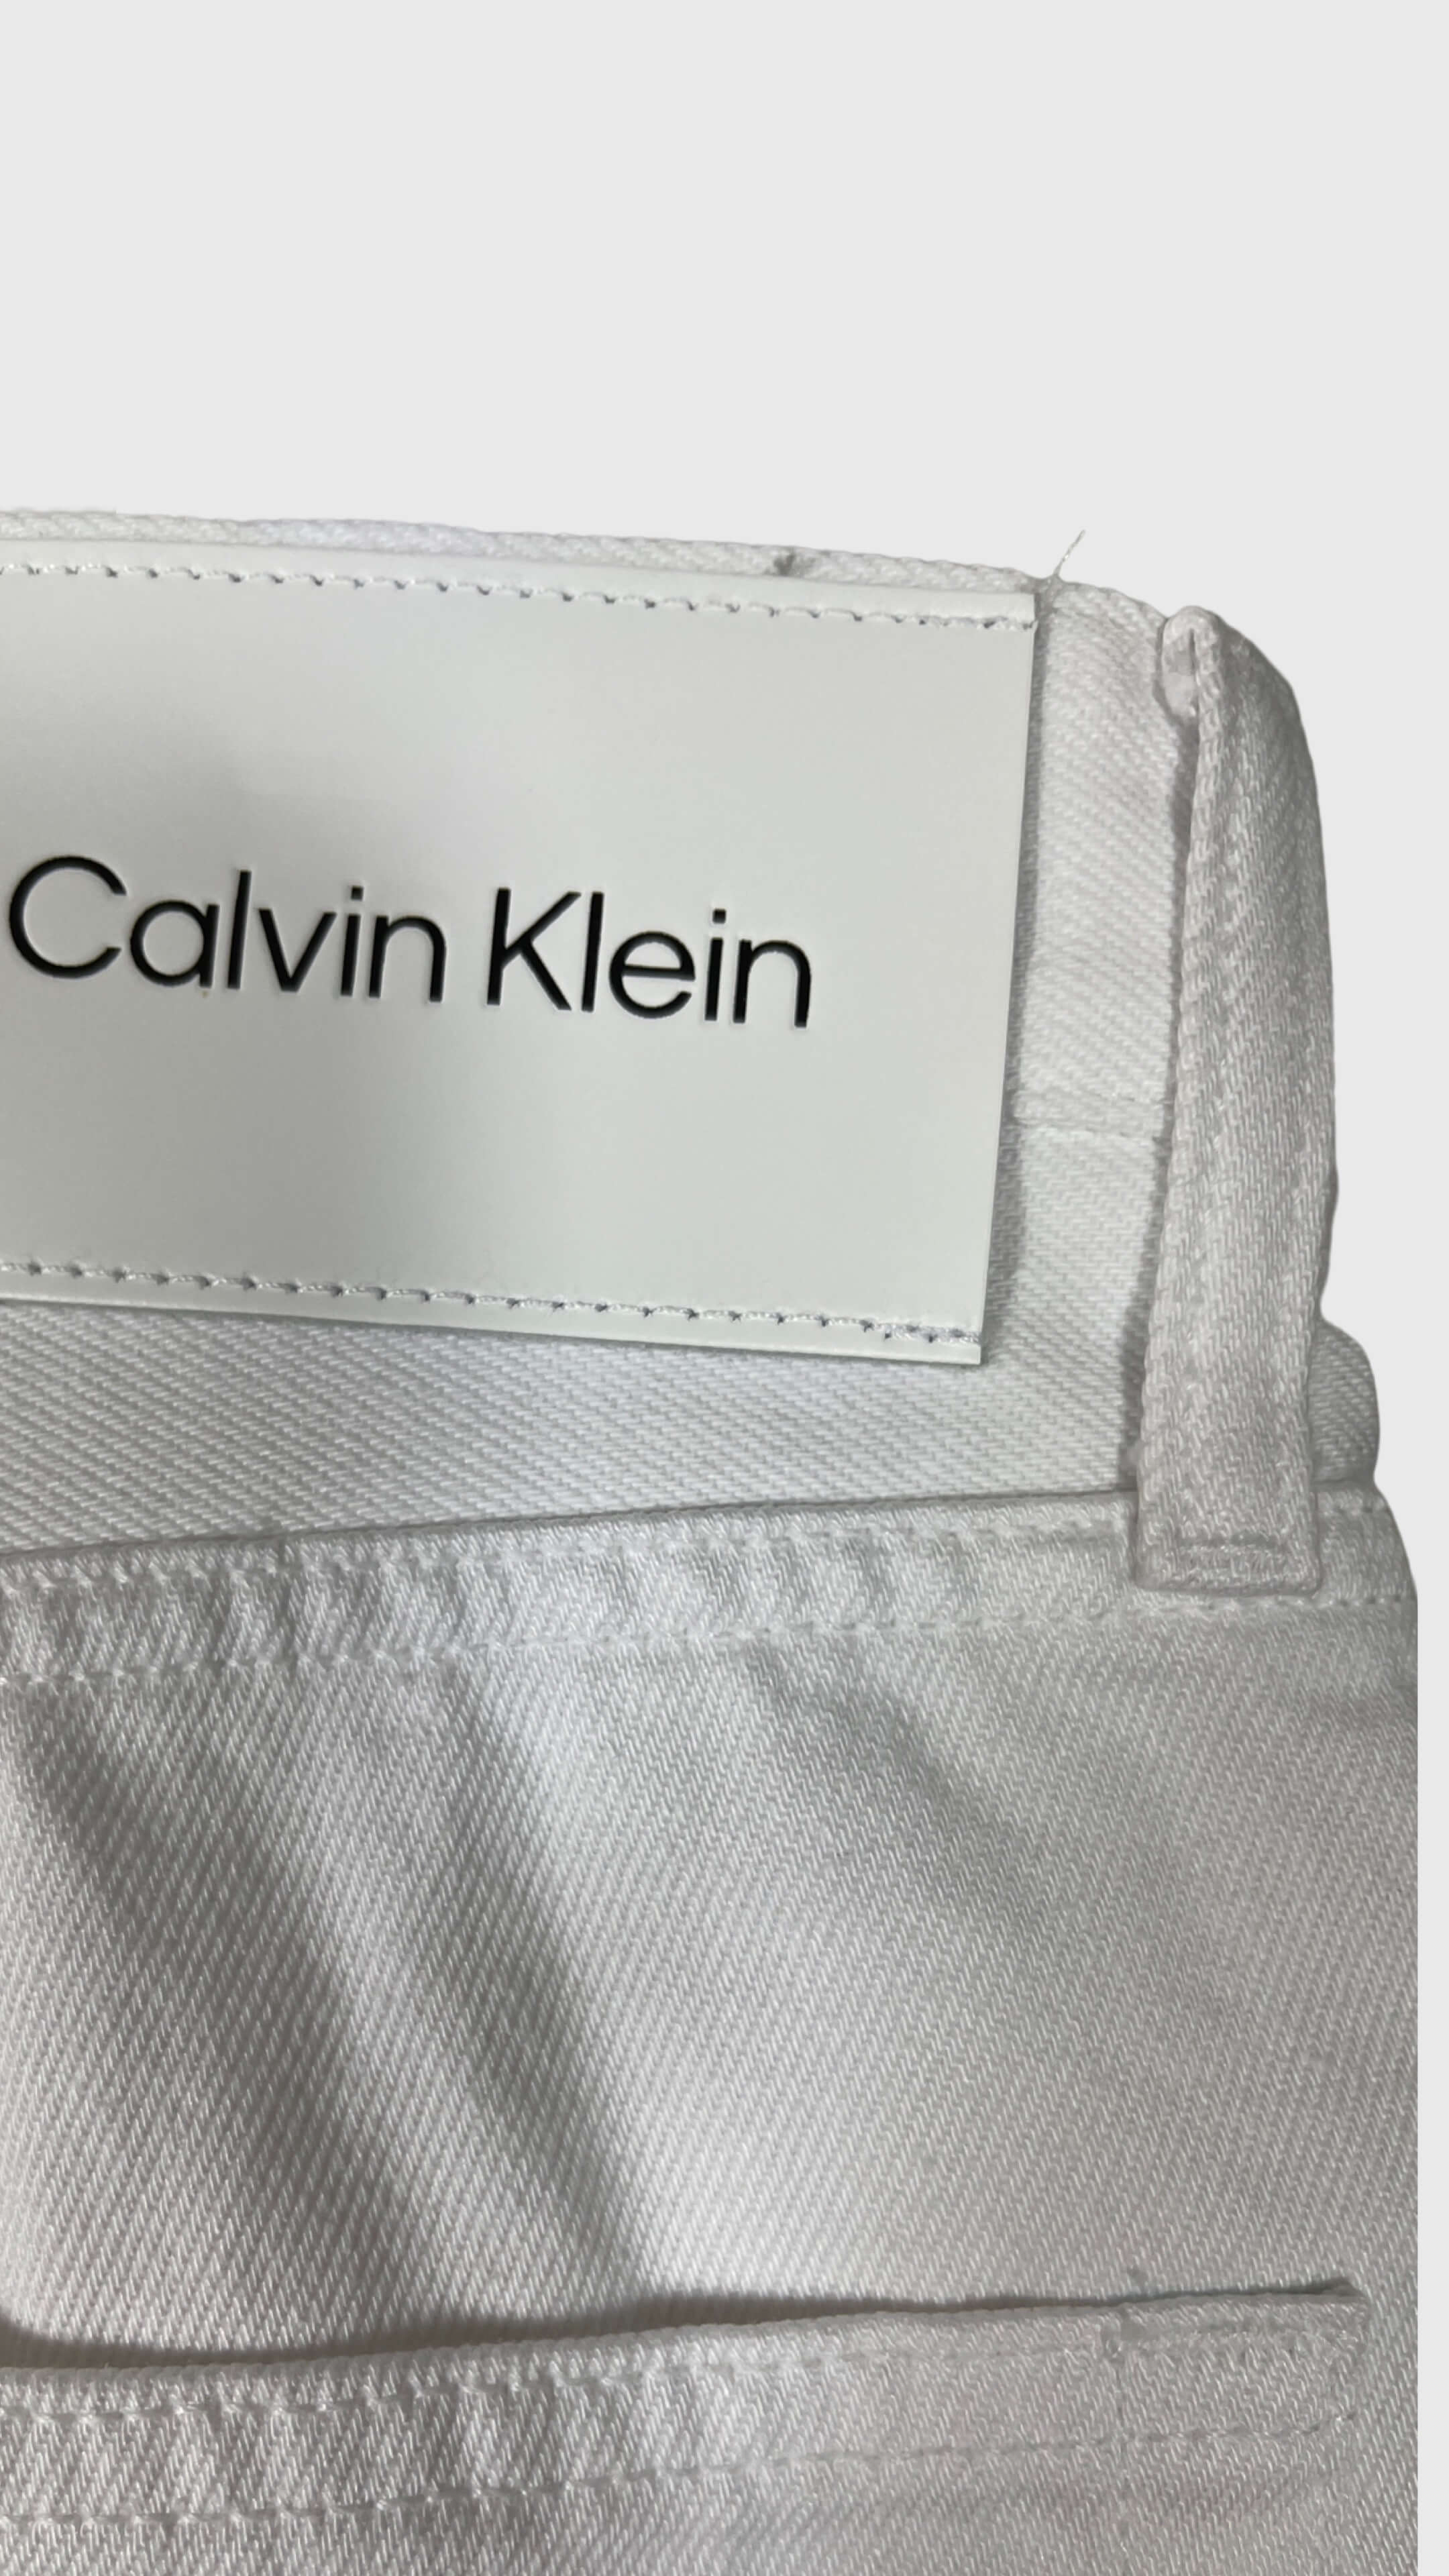 CALVIN KLEIN K10K108625 REGULAR CROPPED HERREN JEANS WHITE.